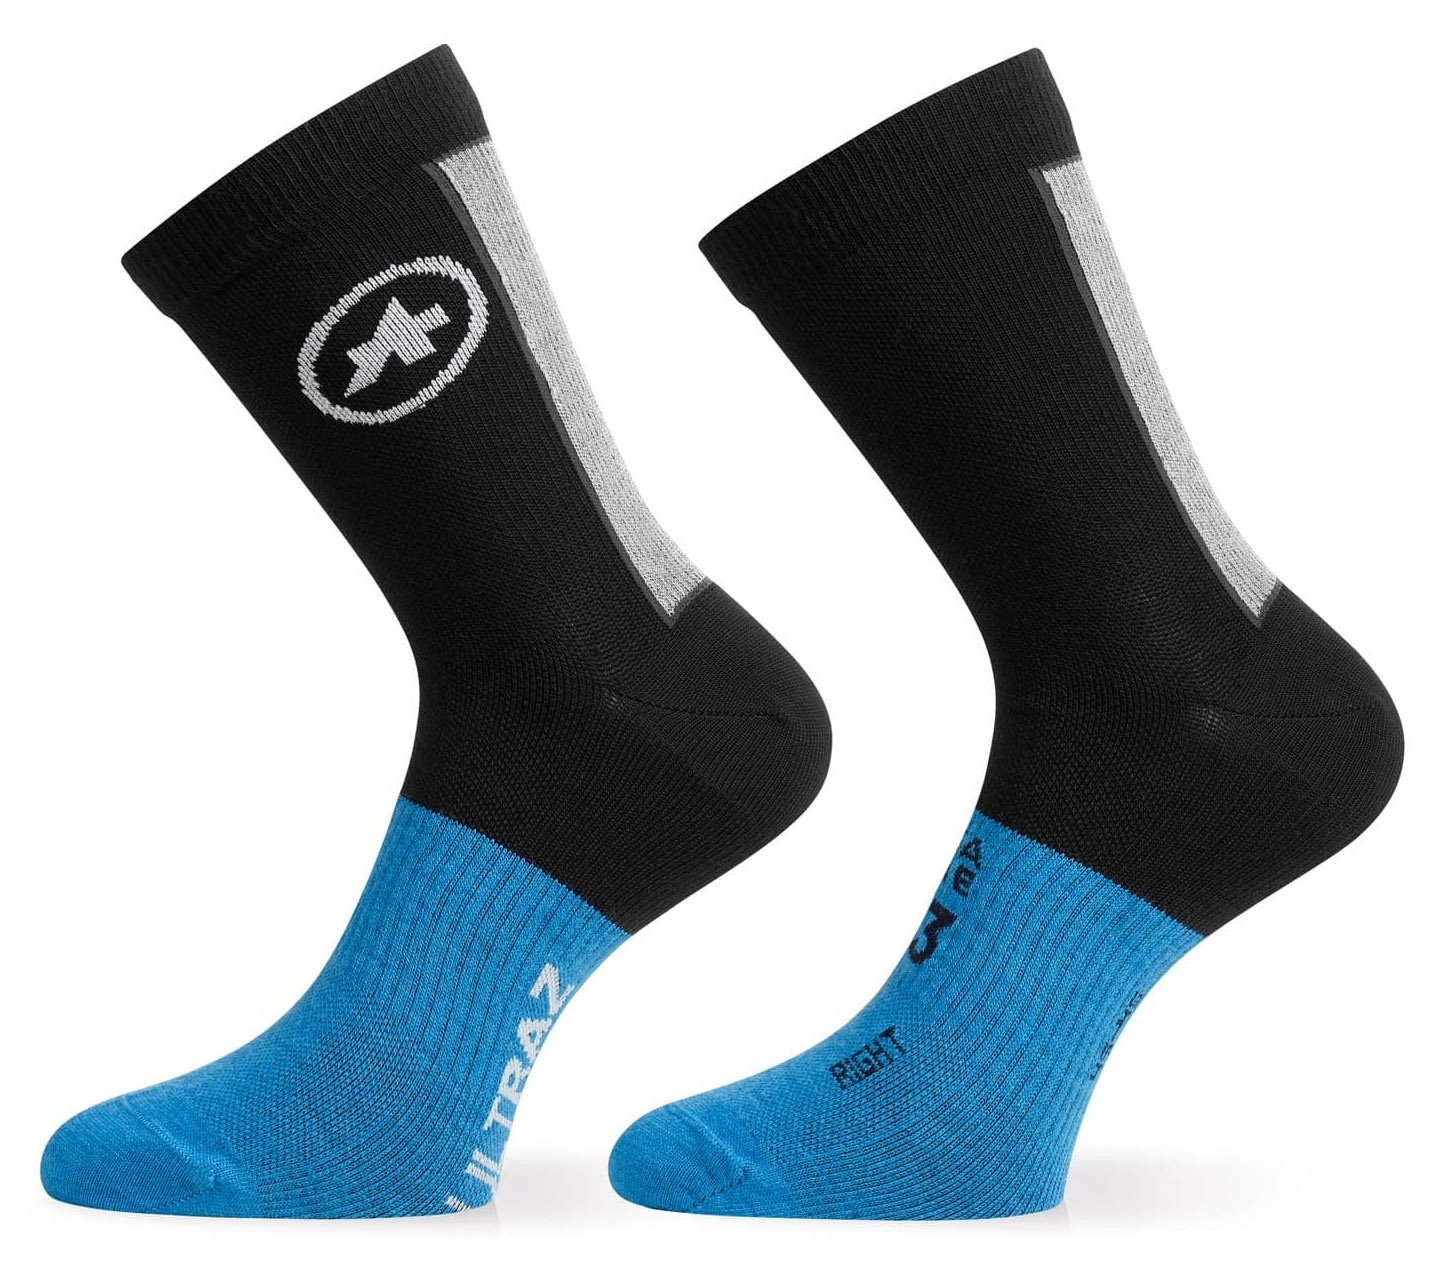 Beklædning - Sokker - Assos Ultraz Winter Socks, Sort